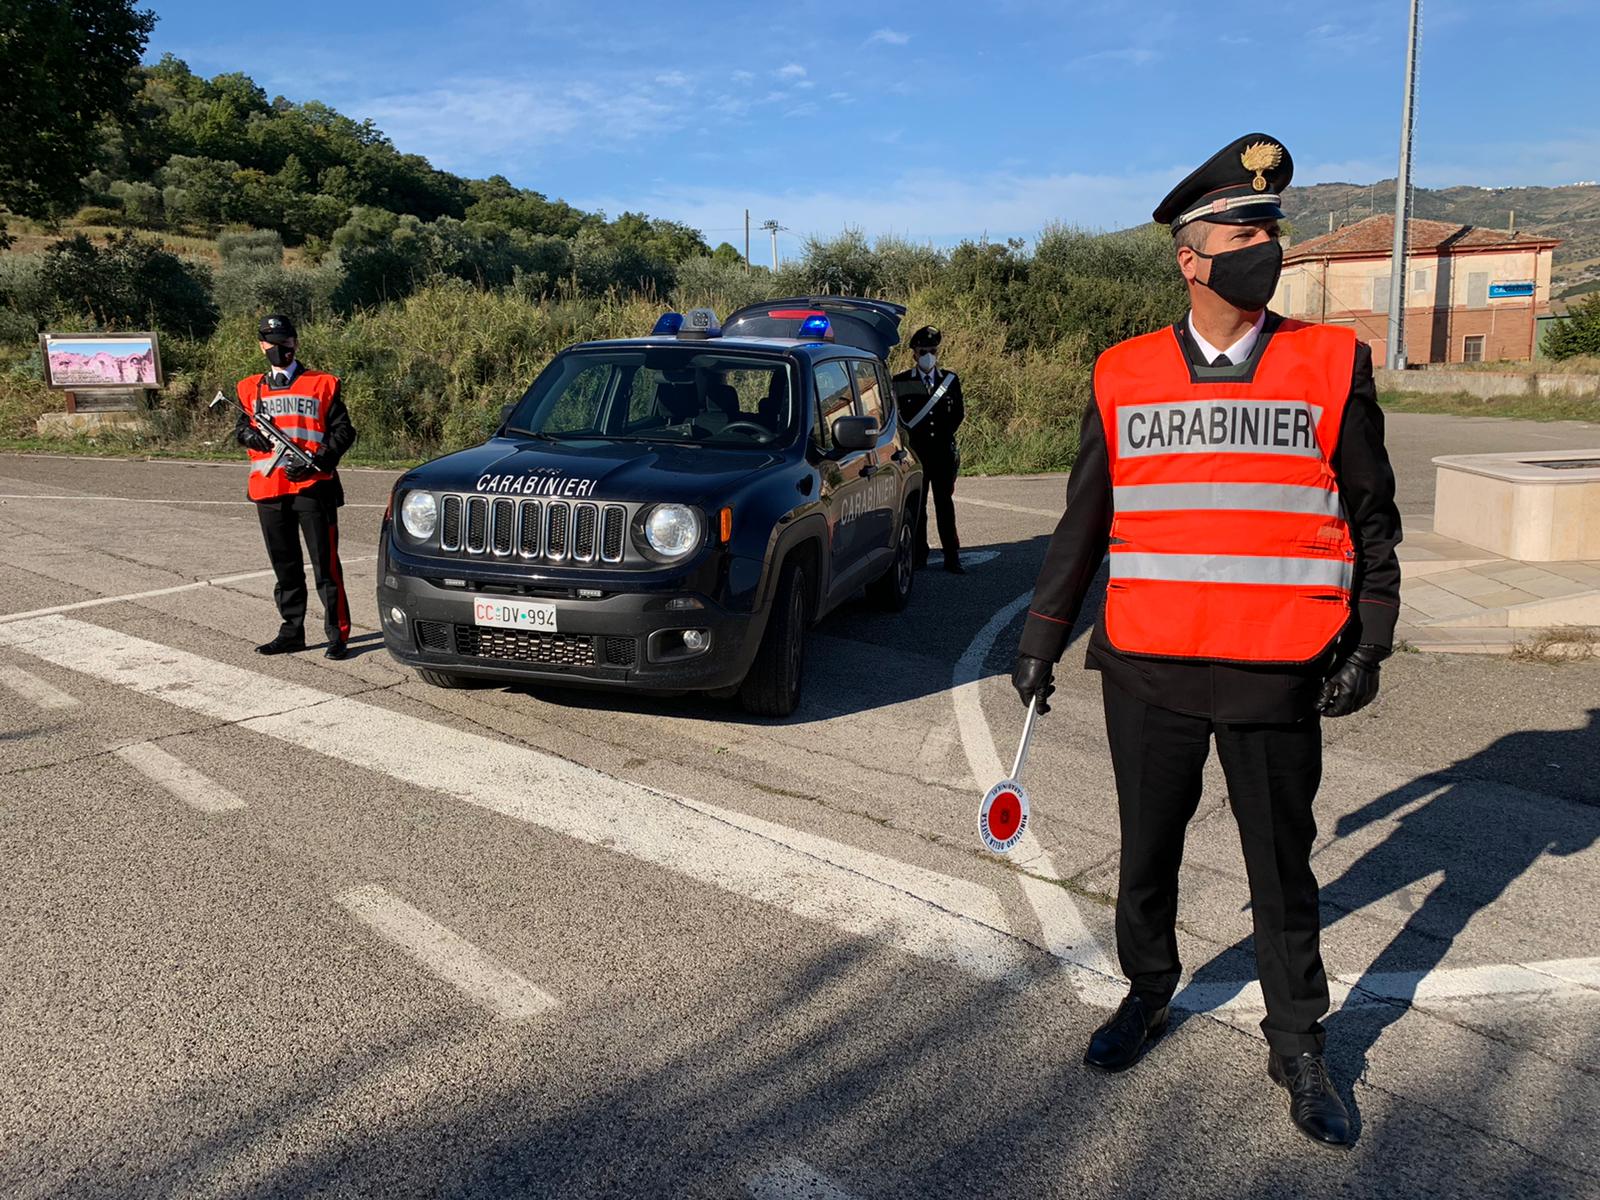 Calciano, positivo al Covid-19 viola la quarantena. 63enne denunciato dai Carabinieri